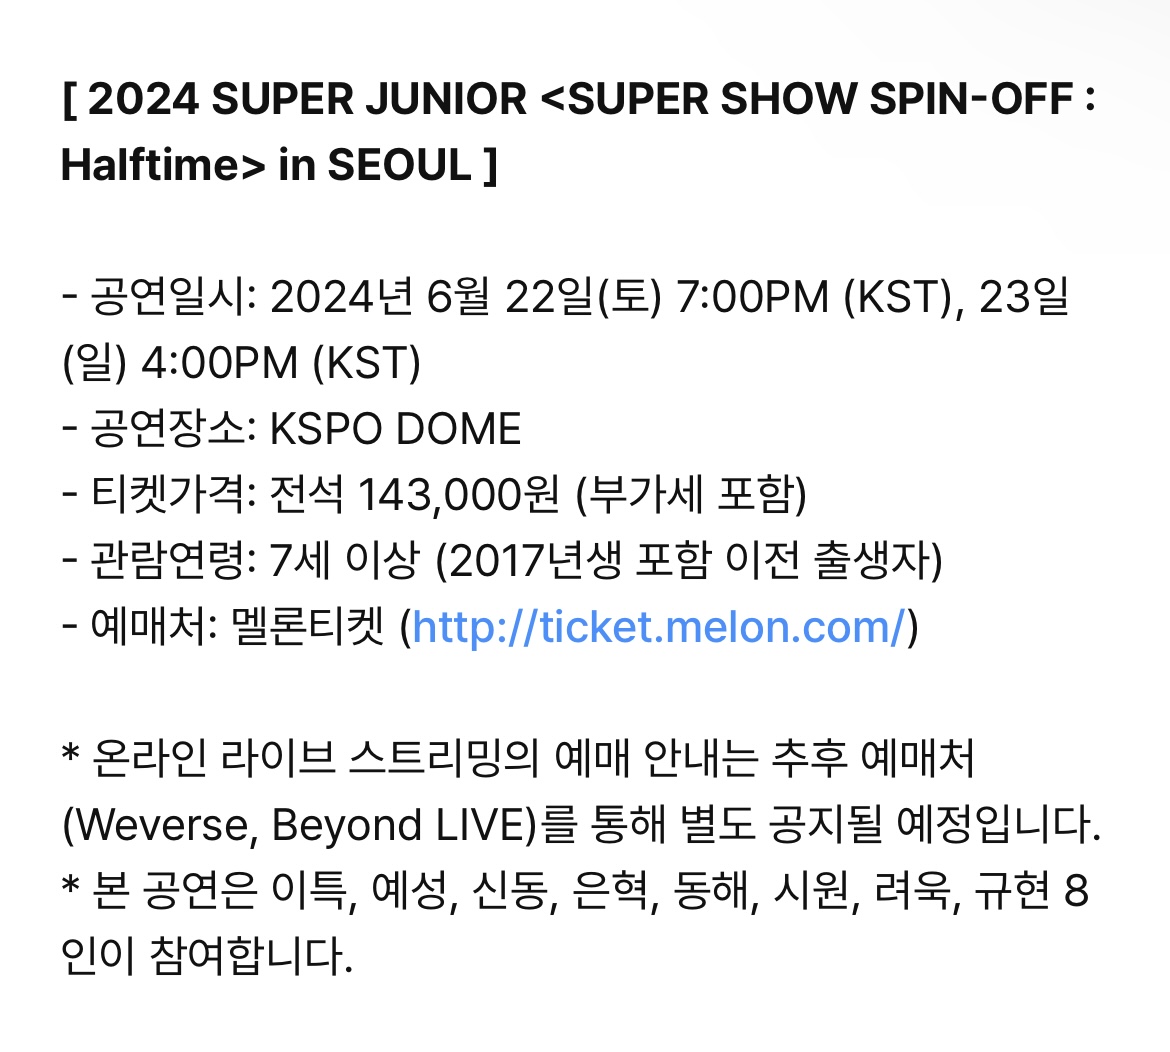 [閒聊] 引起討論的SUPER JUNIOR韓國演唱會價格